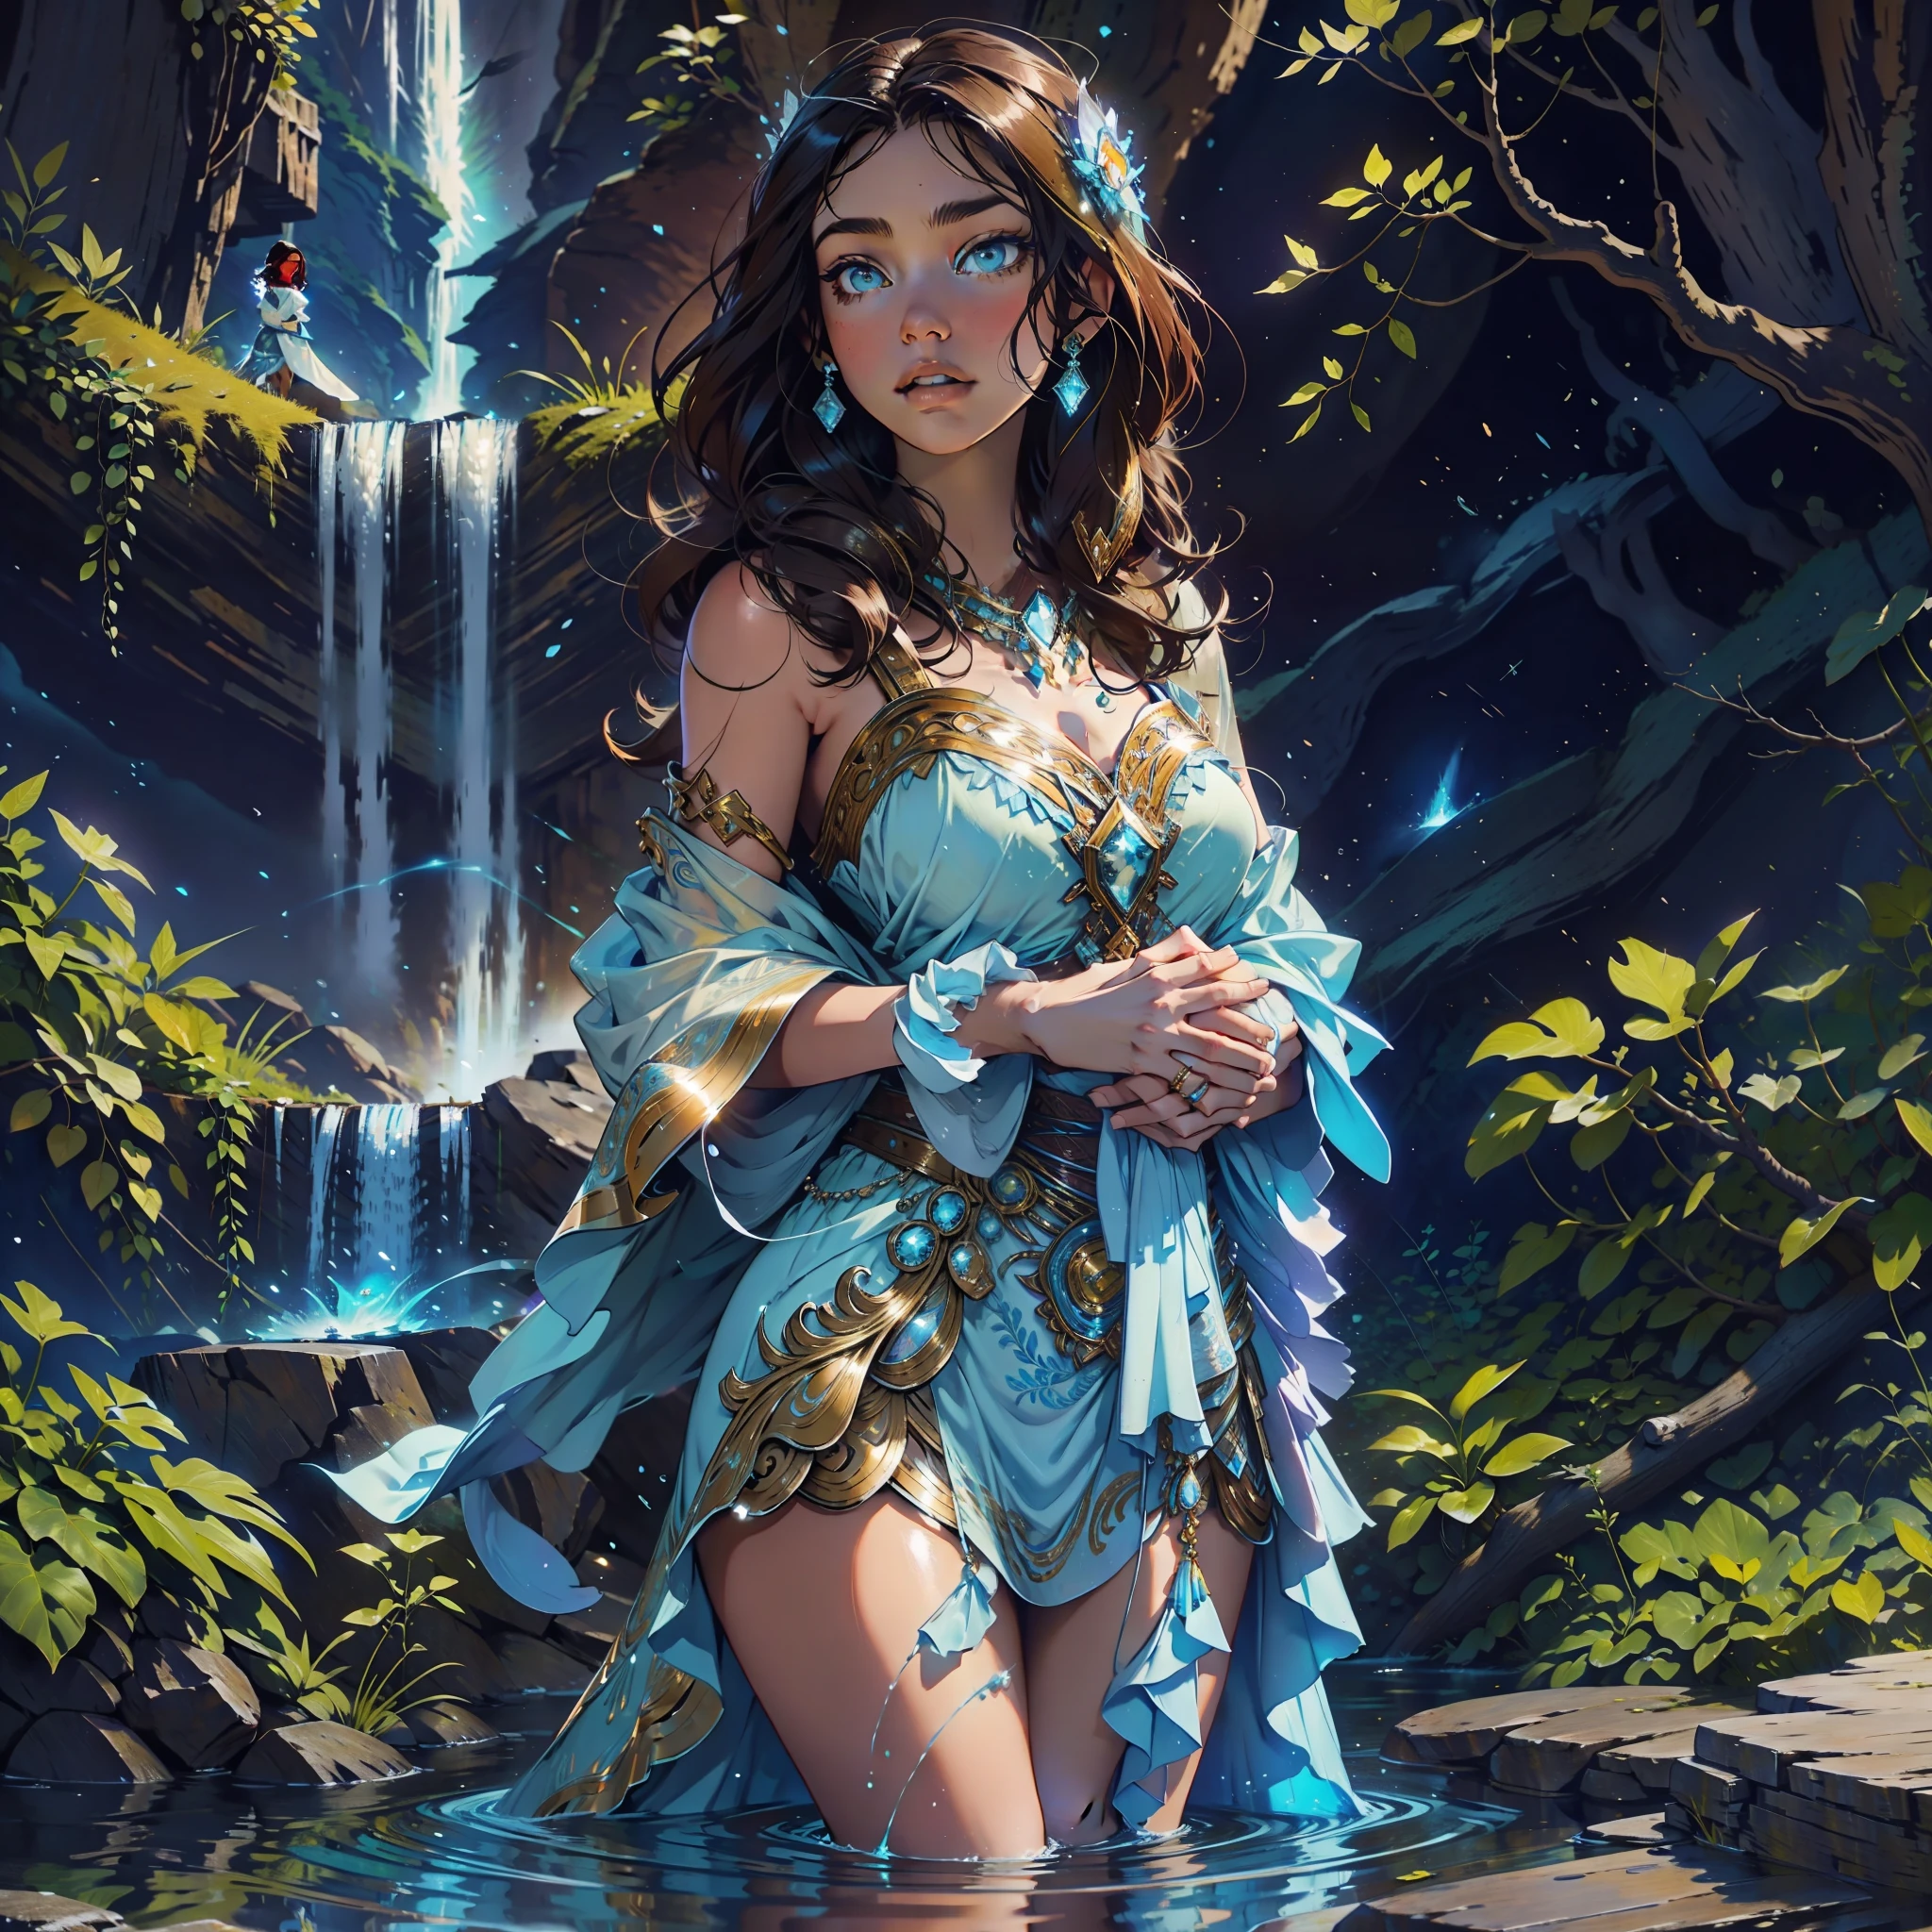 Eine brünette Frau steht an einem majestätischen Wasserfall, der sanft blau leuchtet, während er über den Körper der Frau fällt, die an diesem Ort Frieden verspürt